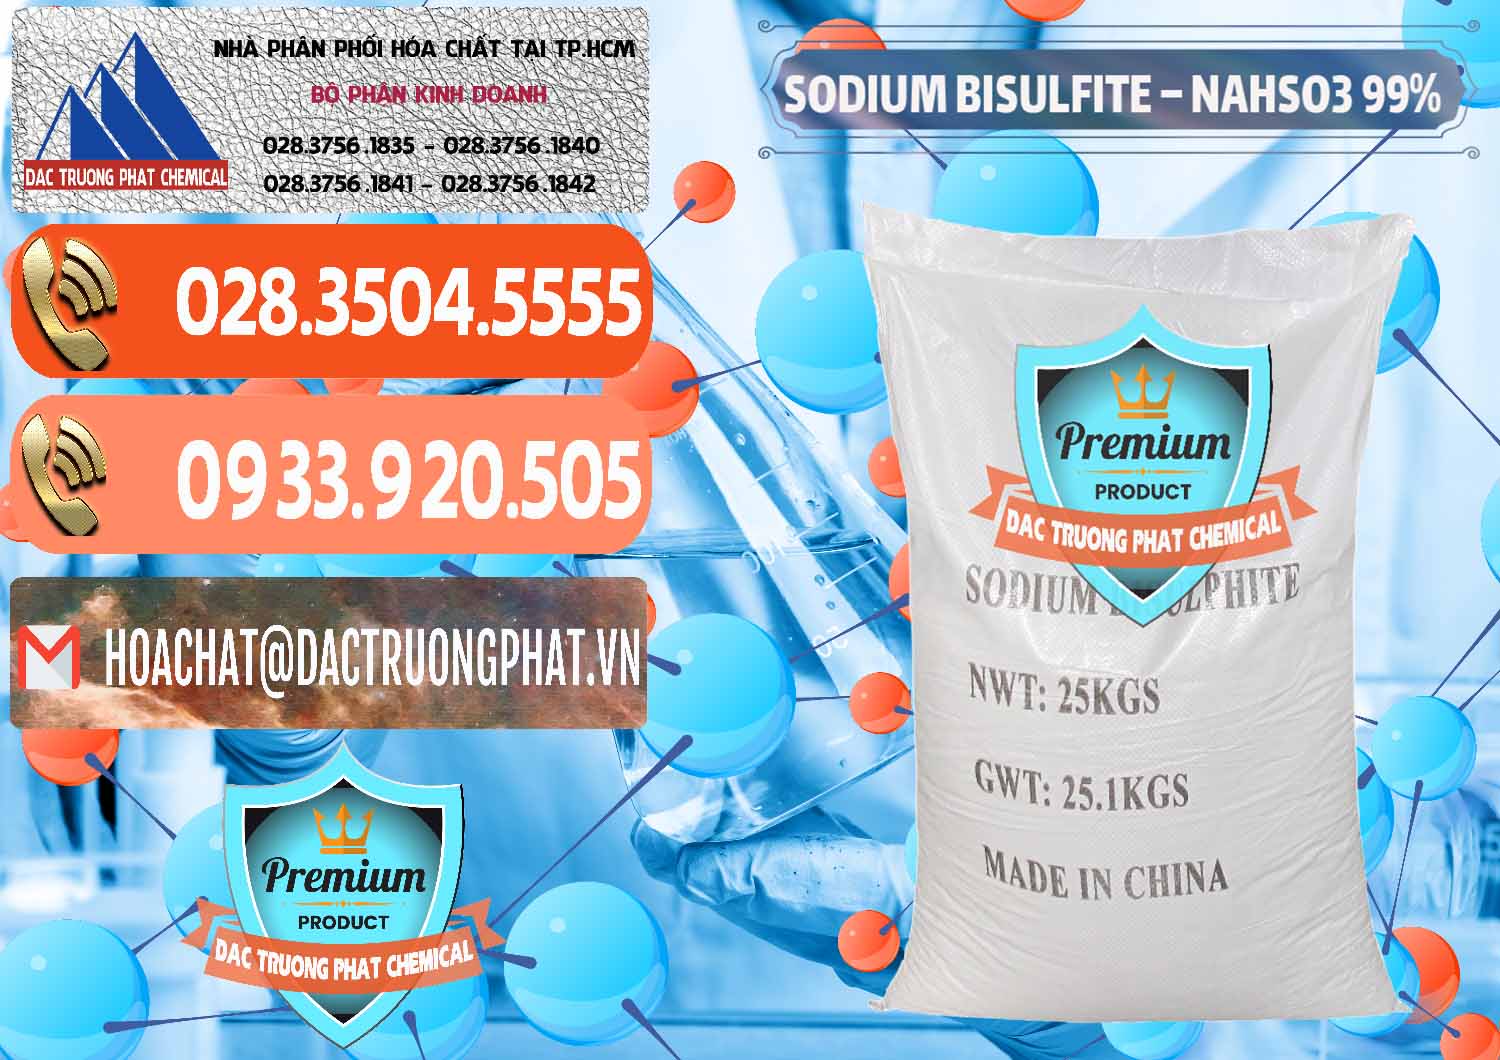 Công ty kinh doanh và bán Sodium Bisulfite – NAHSO3 Trung Quốc China - 0140 - Phân phối ( cung cấp ) hóa chất tại TP.HCM - hoachatmientay.com